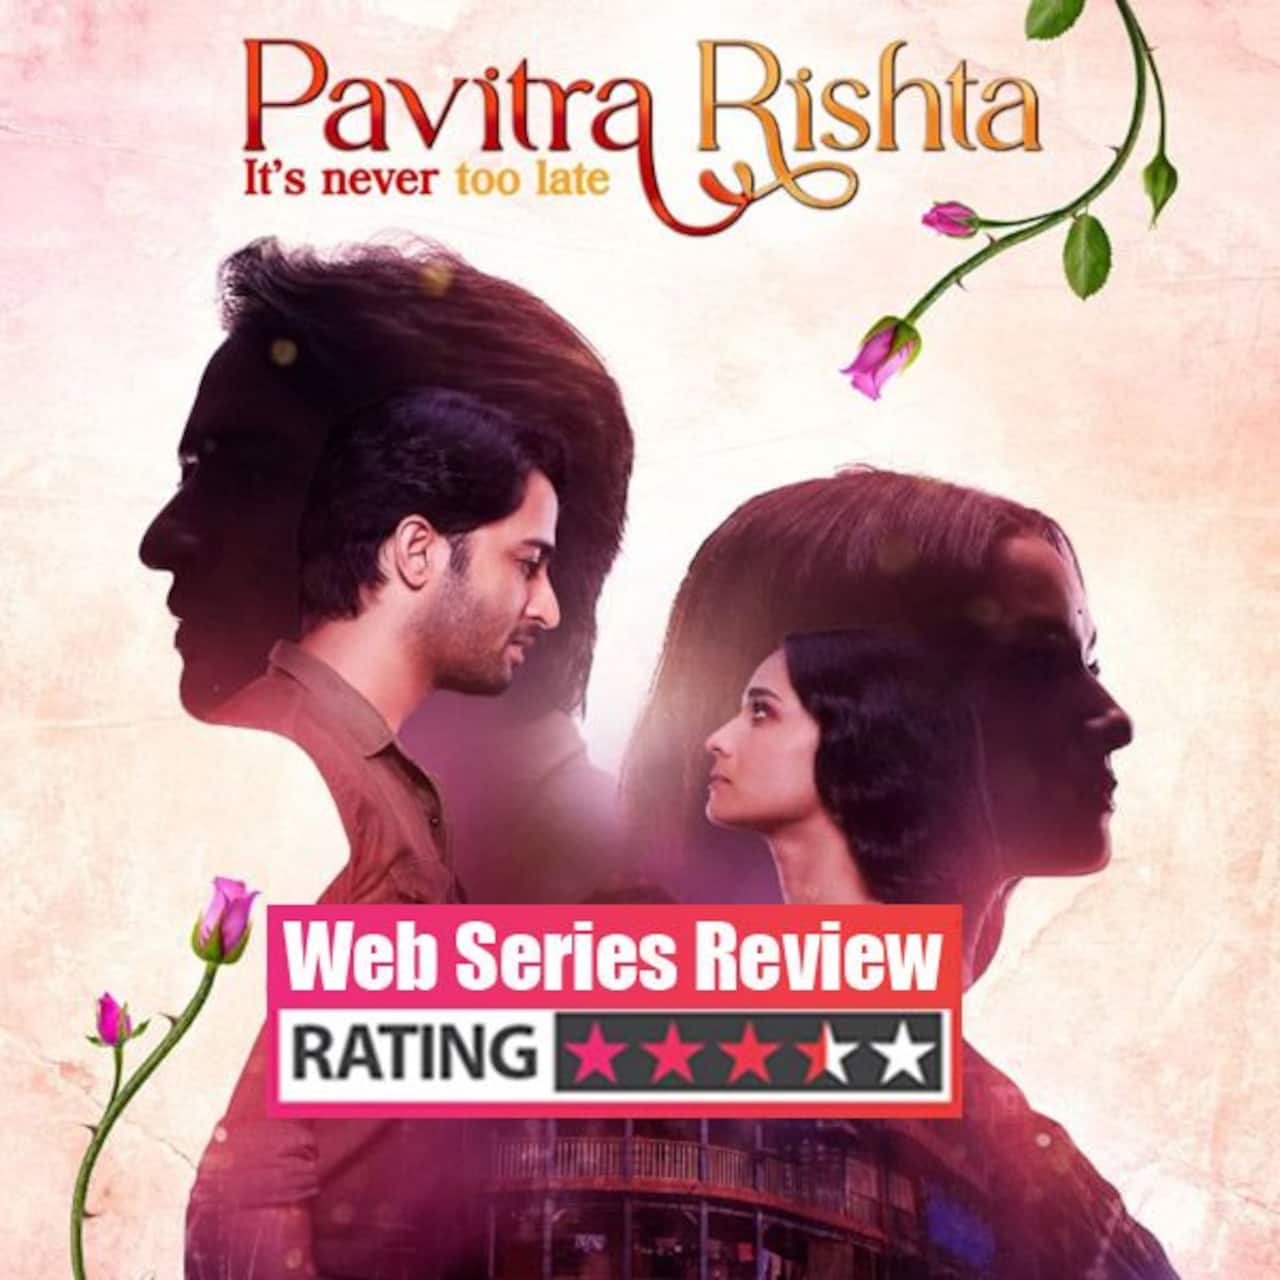 Pavitra Rishta 2 web series review: Ankita Lokhande-Shaheer Sheikh as Archana and Manav will win your hearts